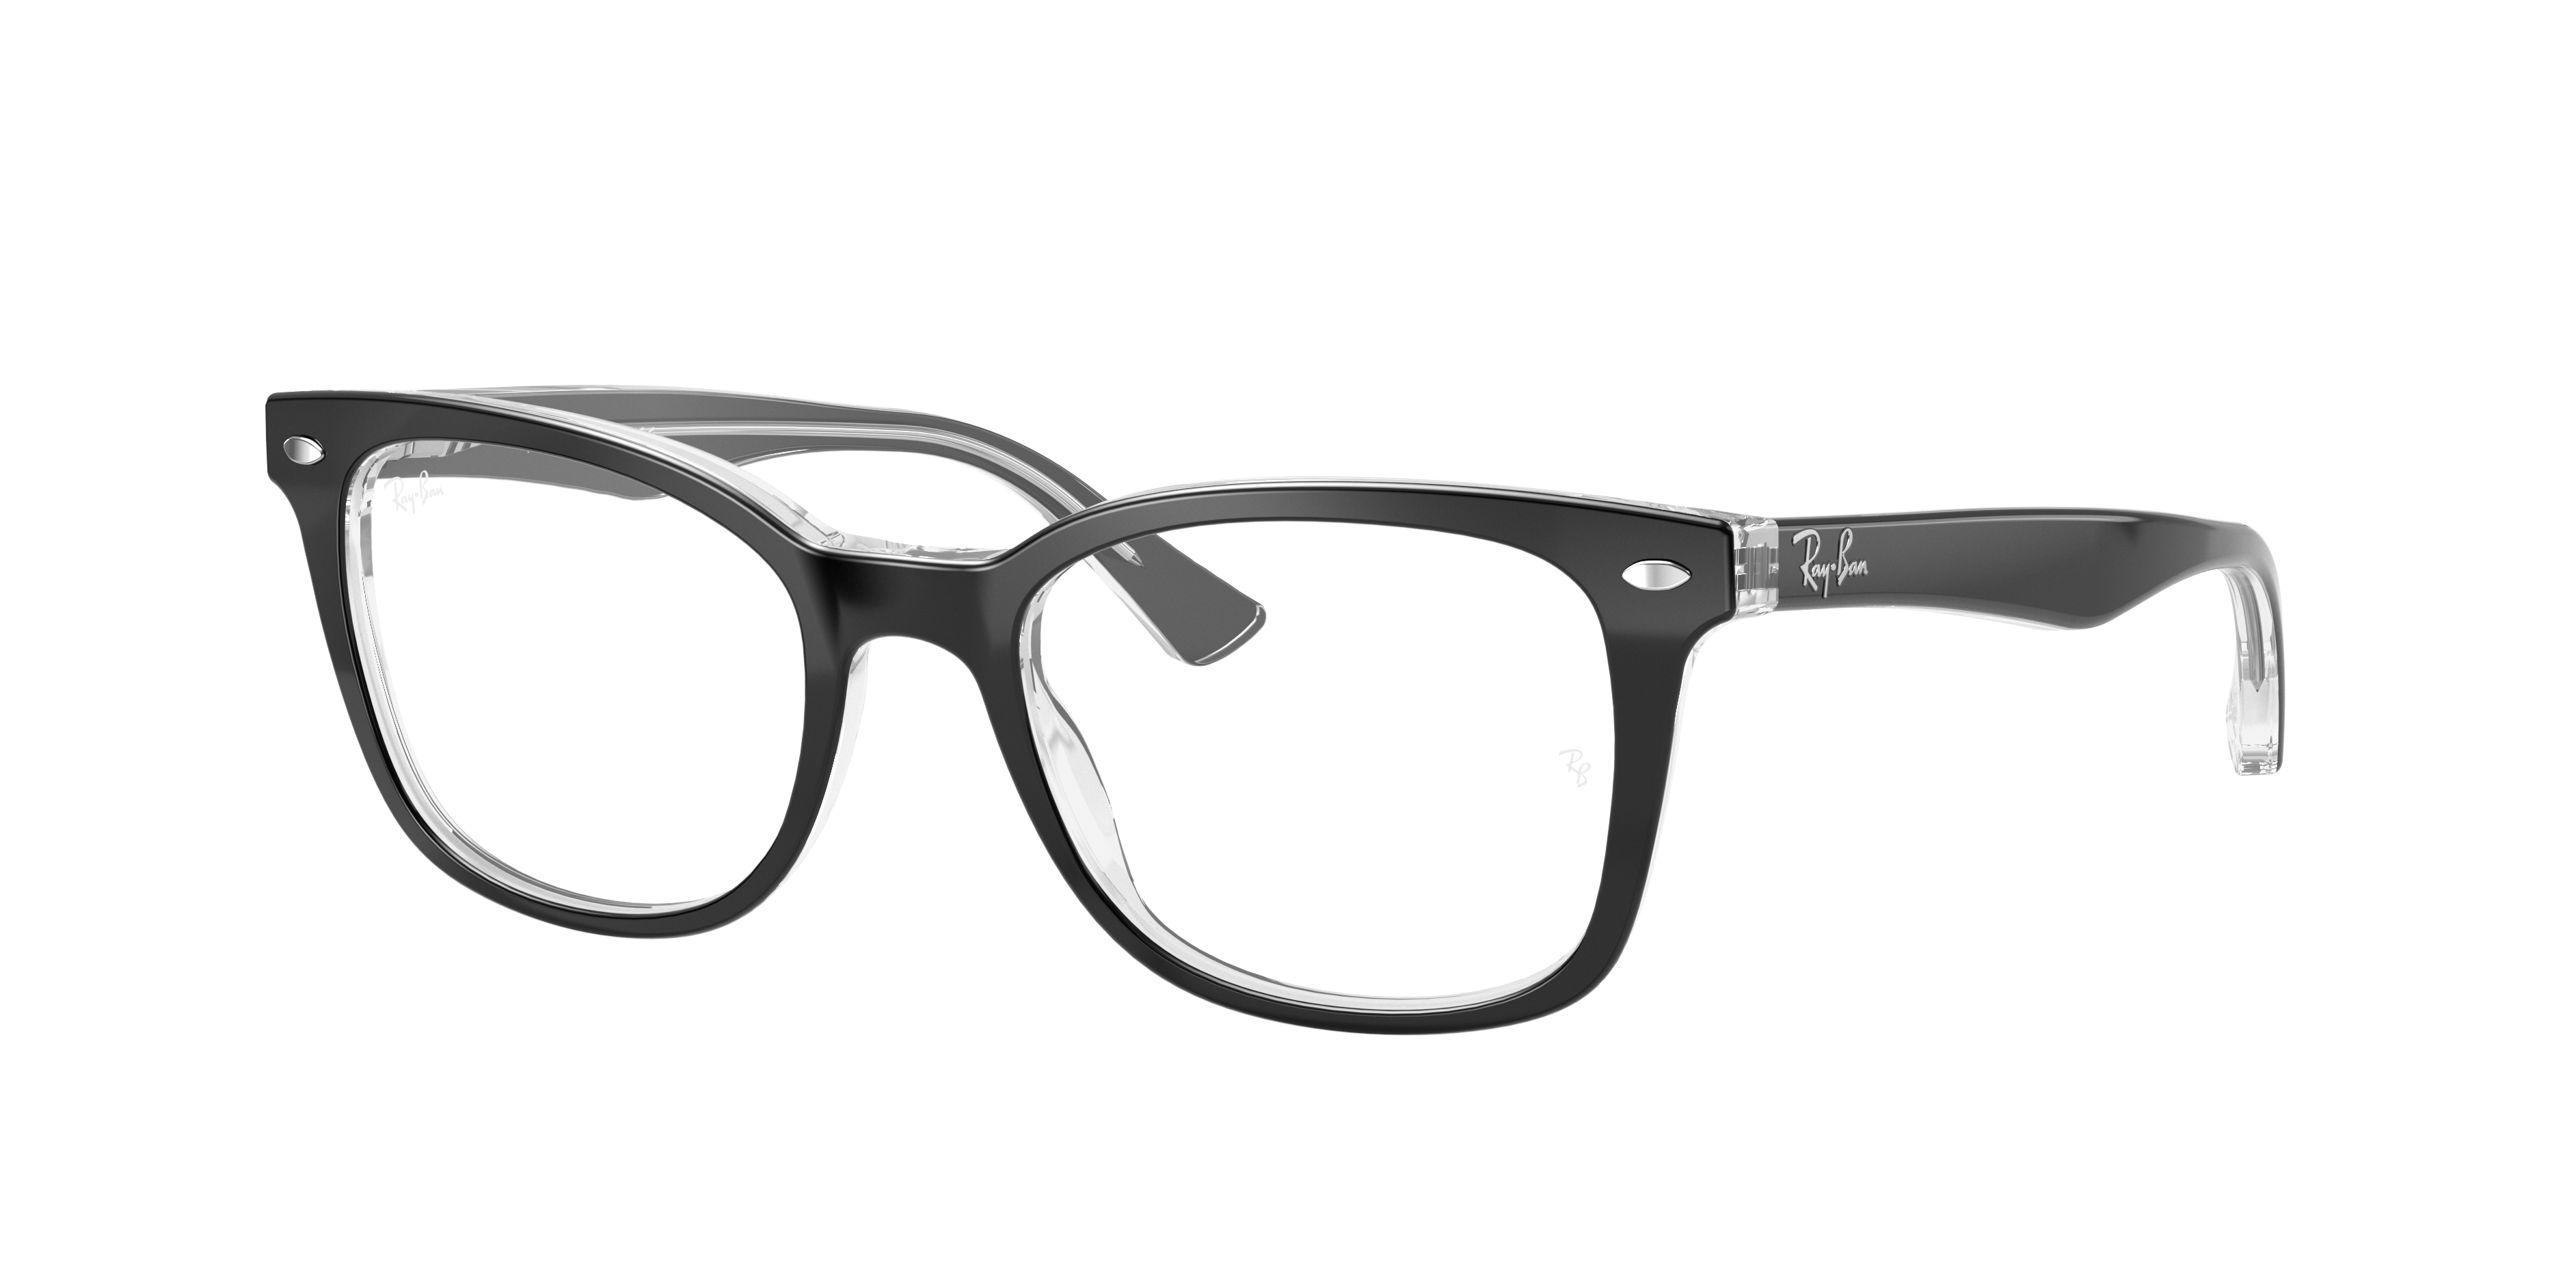 Raffinaderij deugd manager Rb5285 Optics Eyeglasses with Black On Transparent Frame | Ray-Ban®